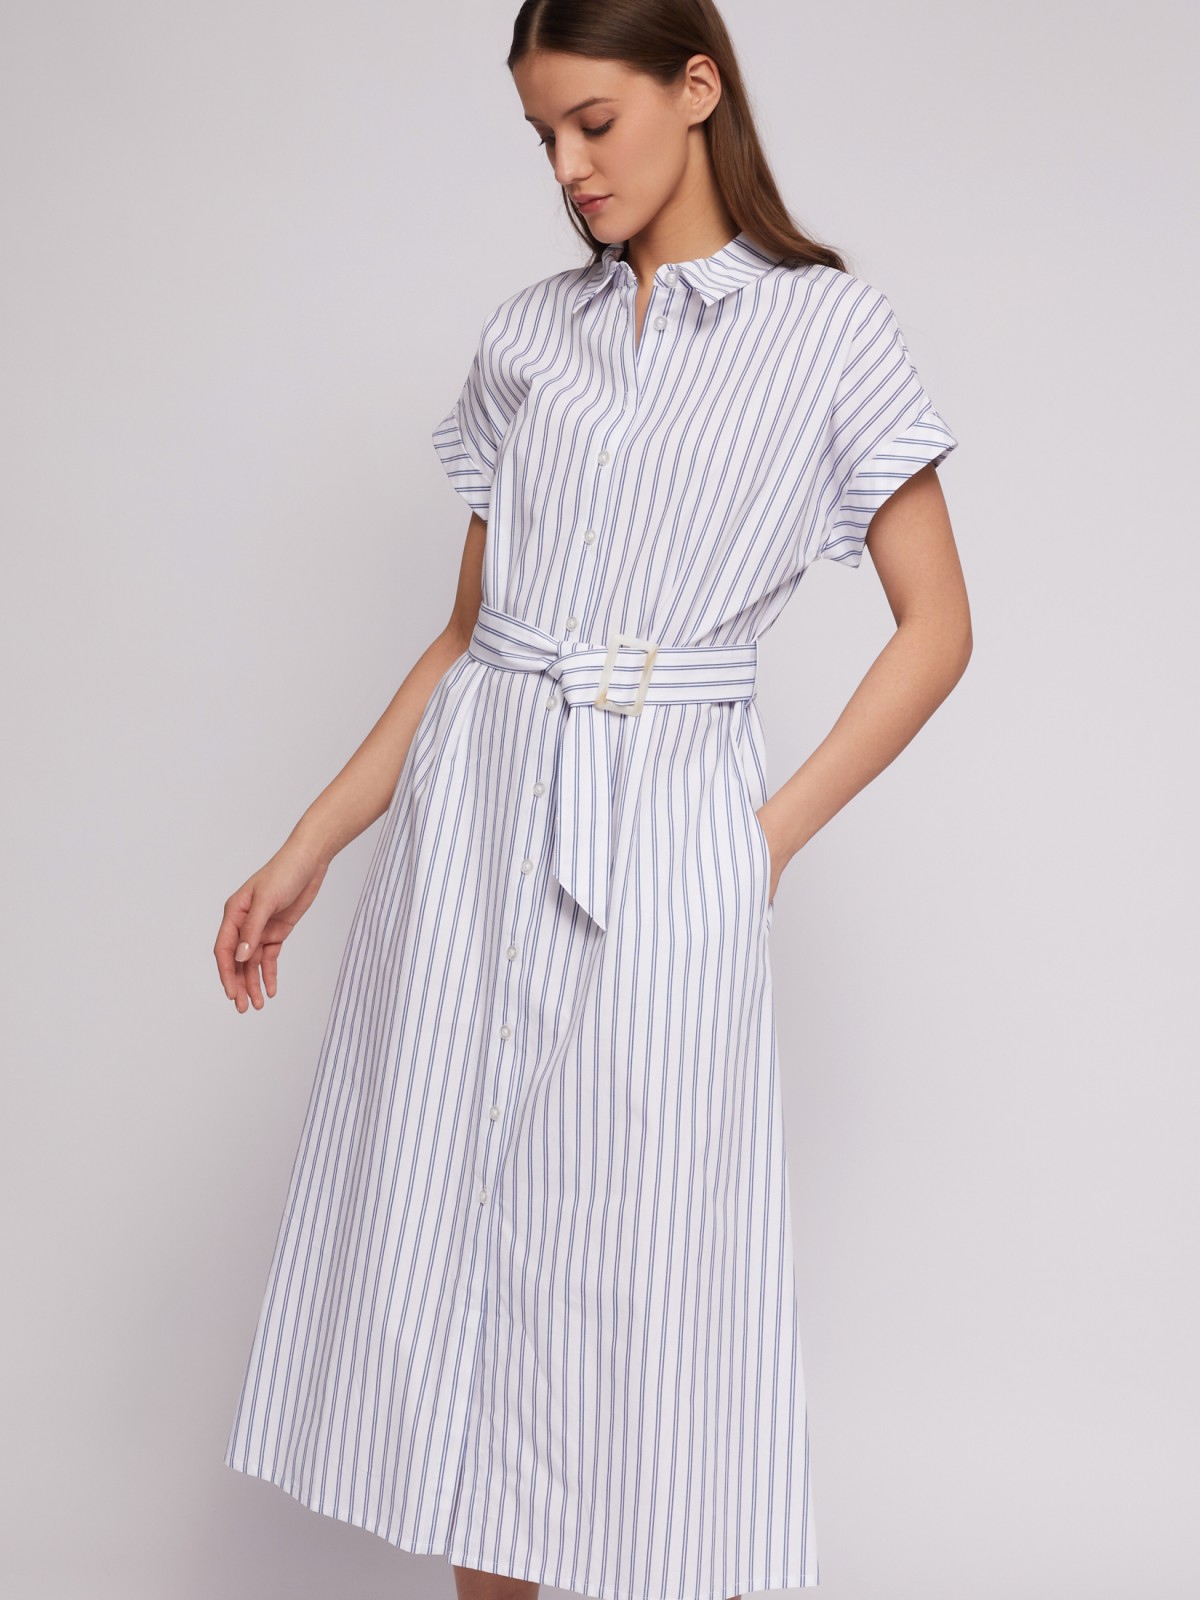 Платье-рубашка из хлопка с коротким рукавом и узором в полоску zolla 024218262363, цвет белый, размер S - фото 1